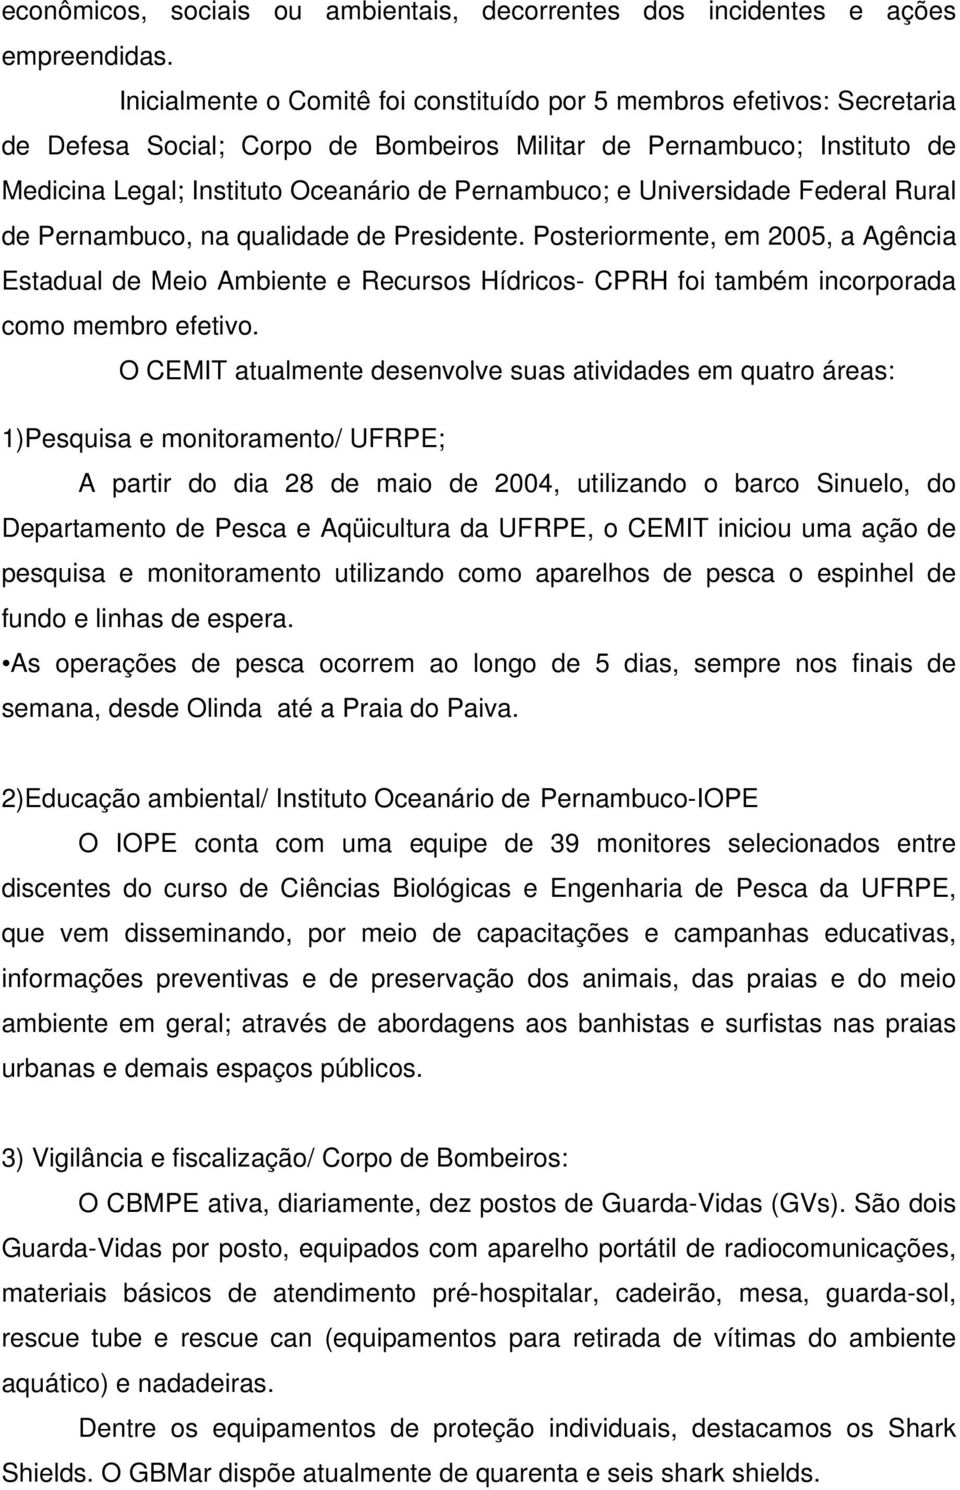 Universidade Federal Rural de Pernambuco, na qualidade de Presidente. Posteriormente, em 2005, a Agência Estadual de Meio Ambiente e Recursos Hídricos- CPRH foi também incorporada como membro efetivo.